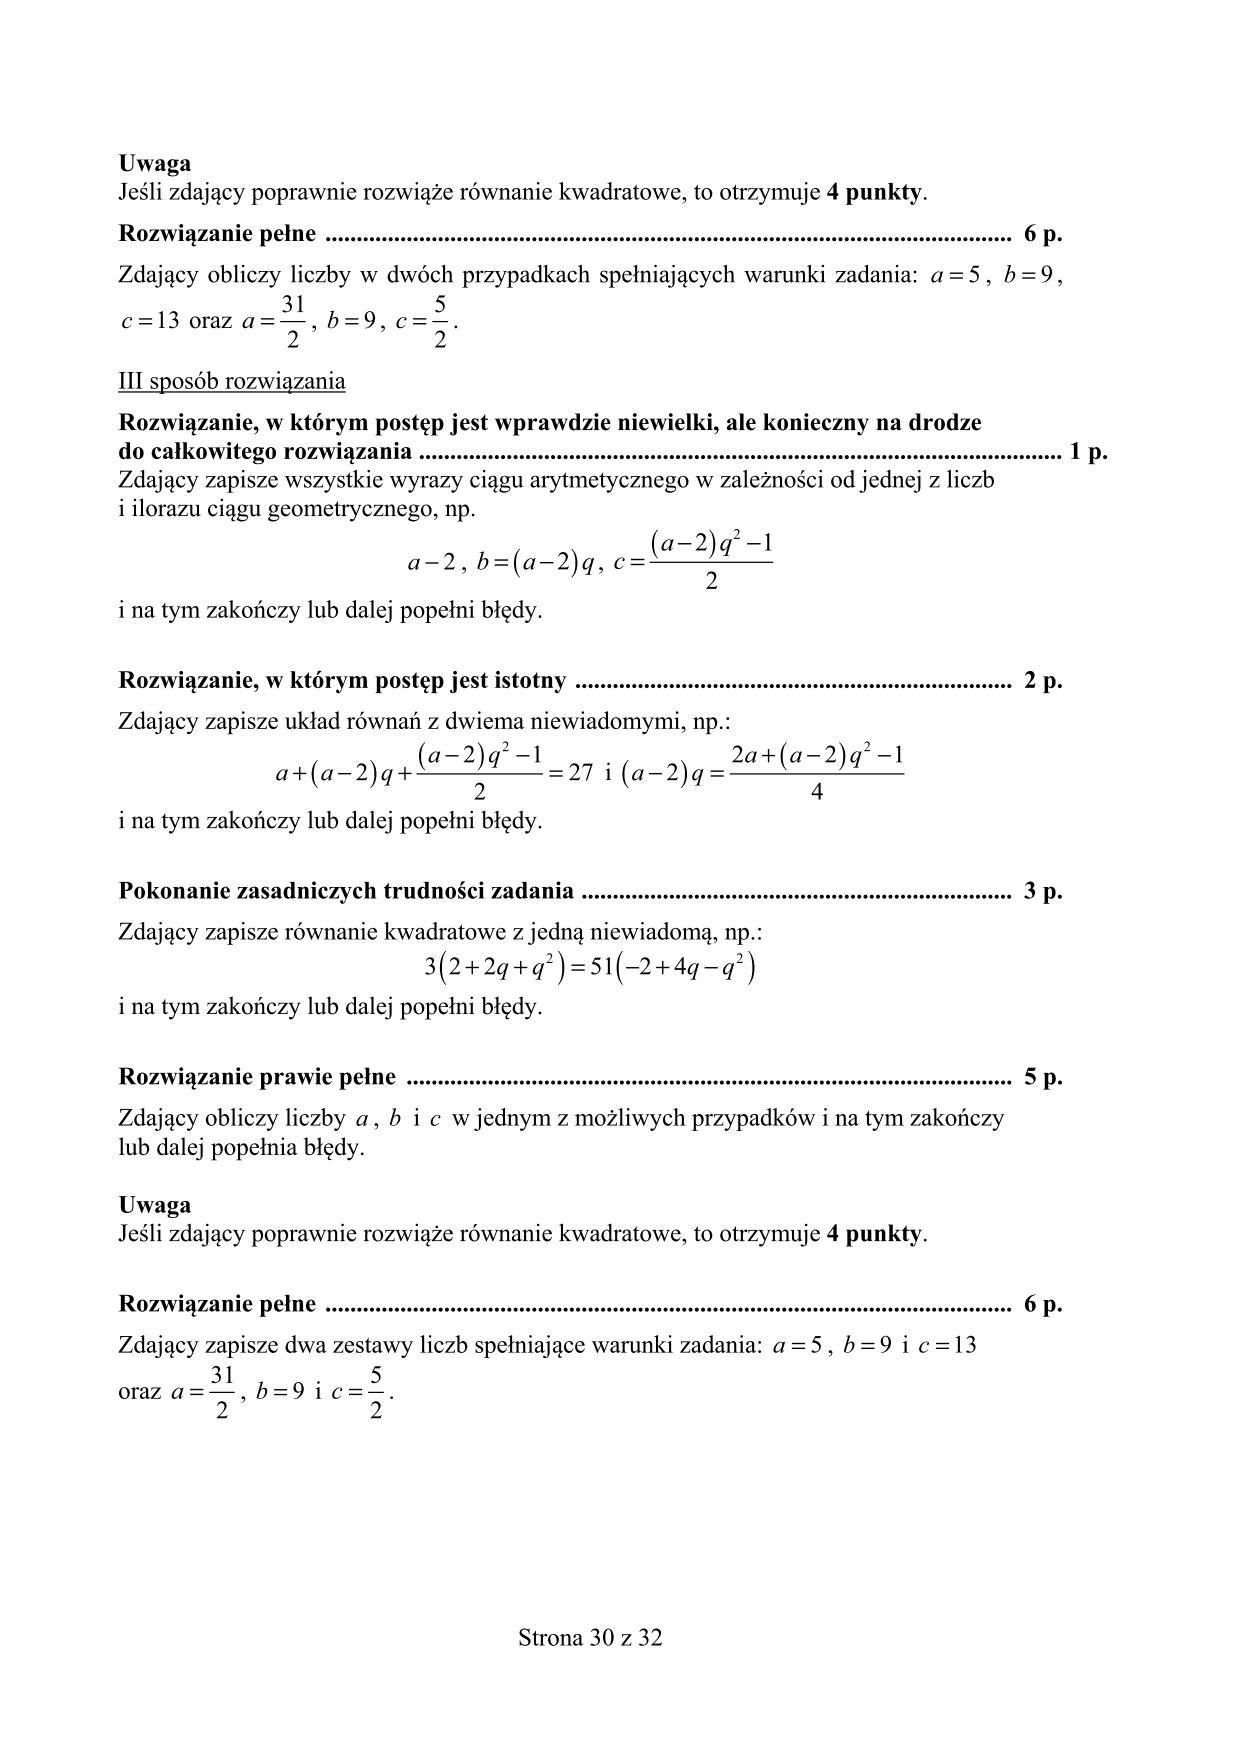 odpowiedzi-matematyka-p.rozszerzony-nowa-matura-2017 - 30